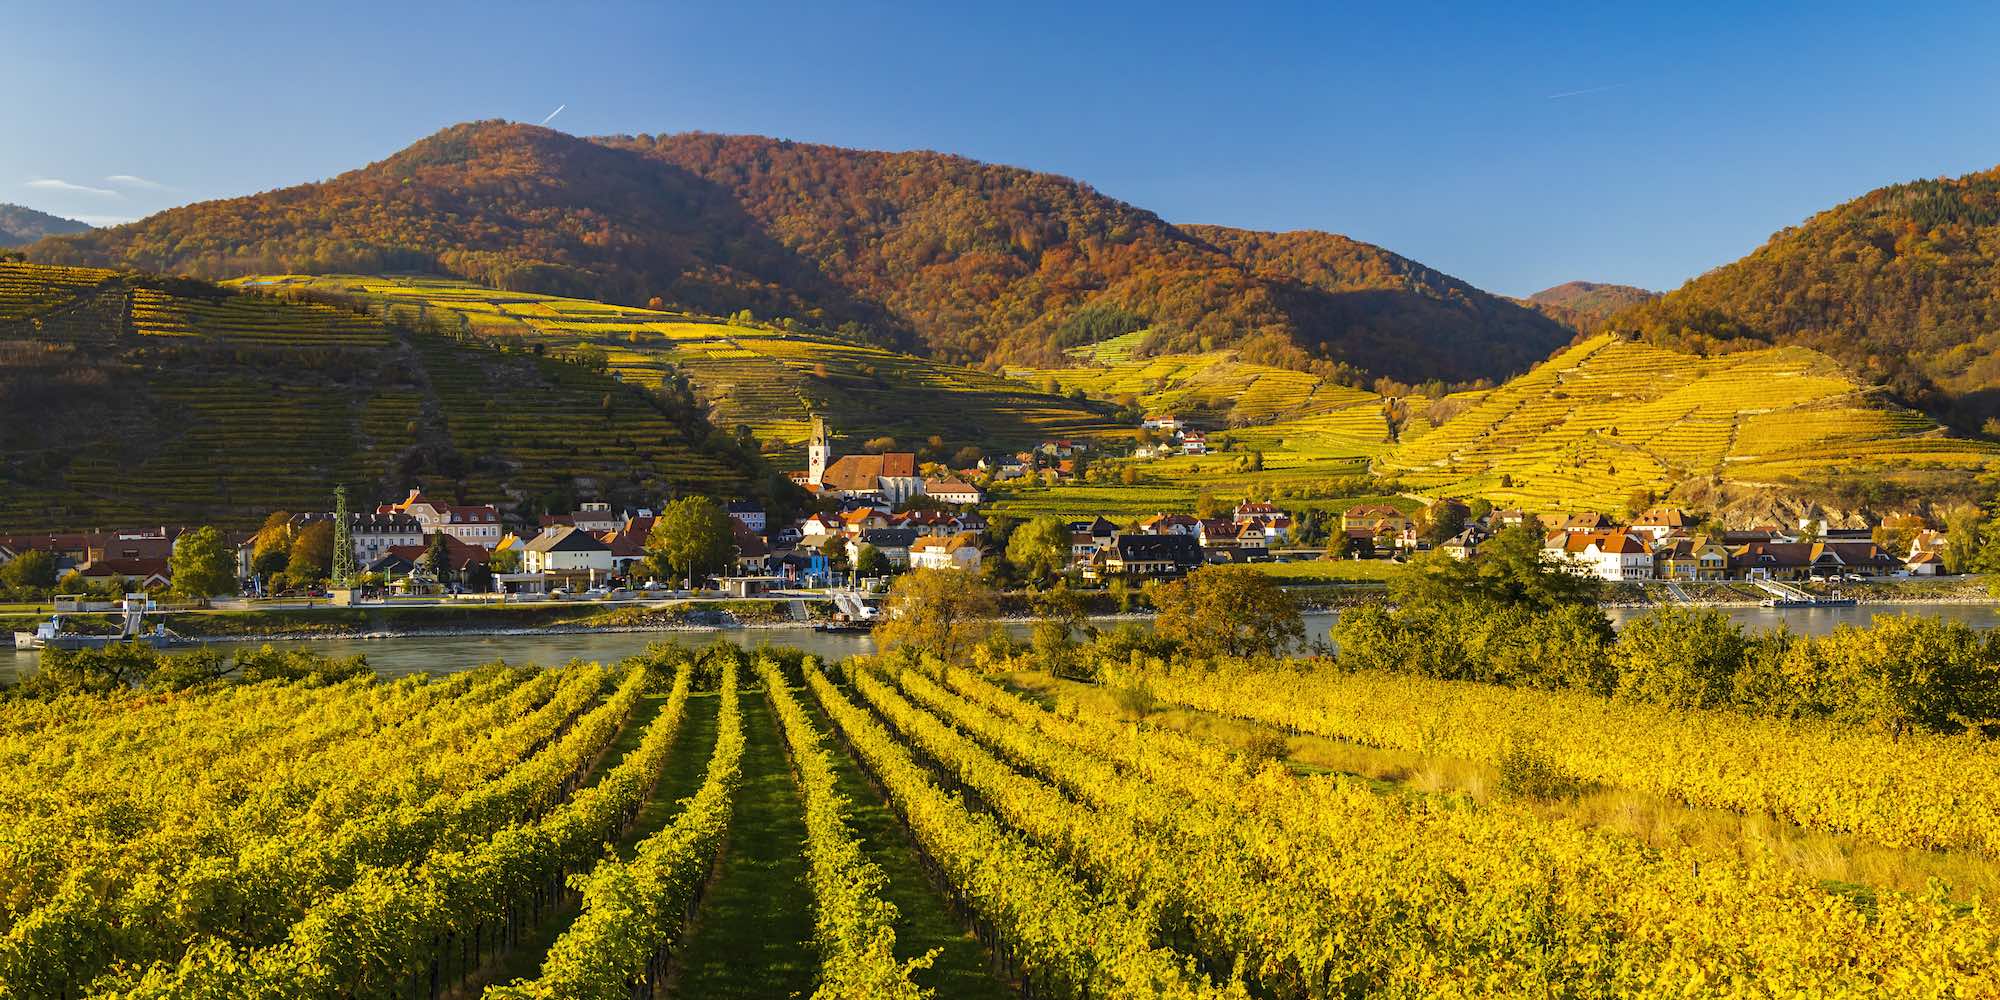 VinTour - More than just wine tourism !